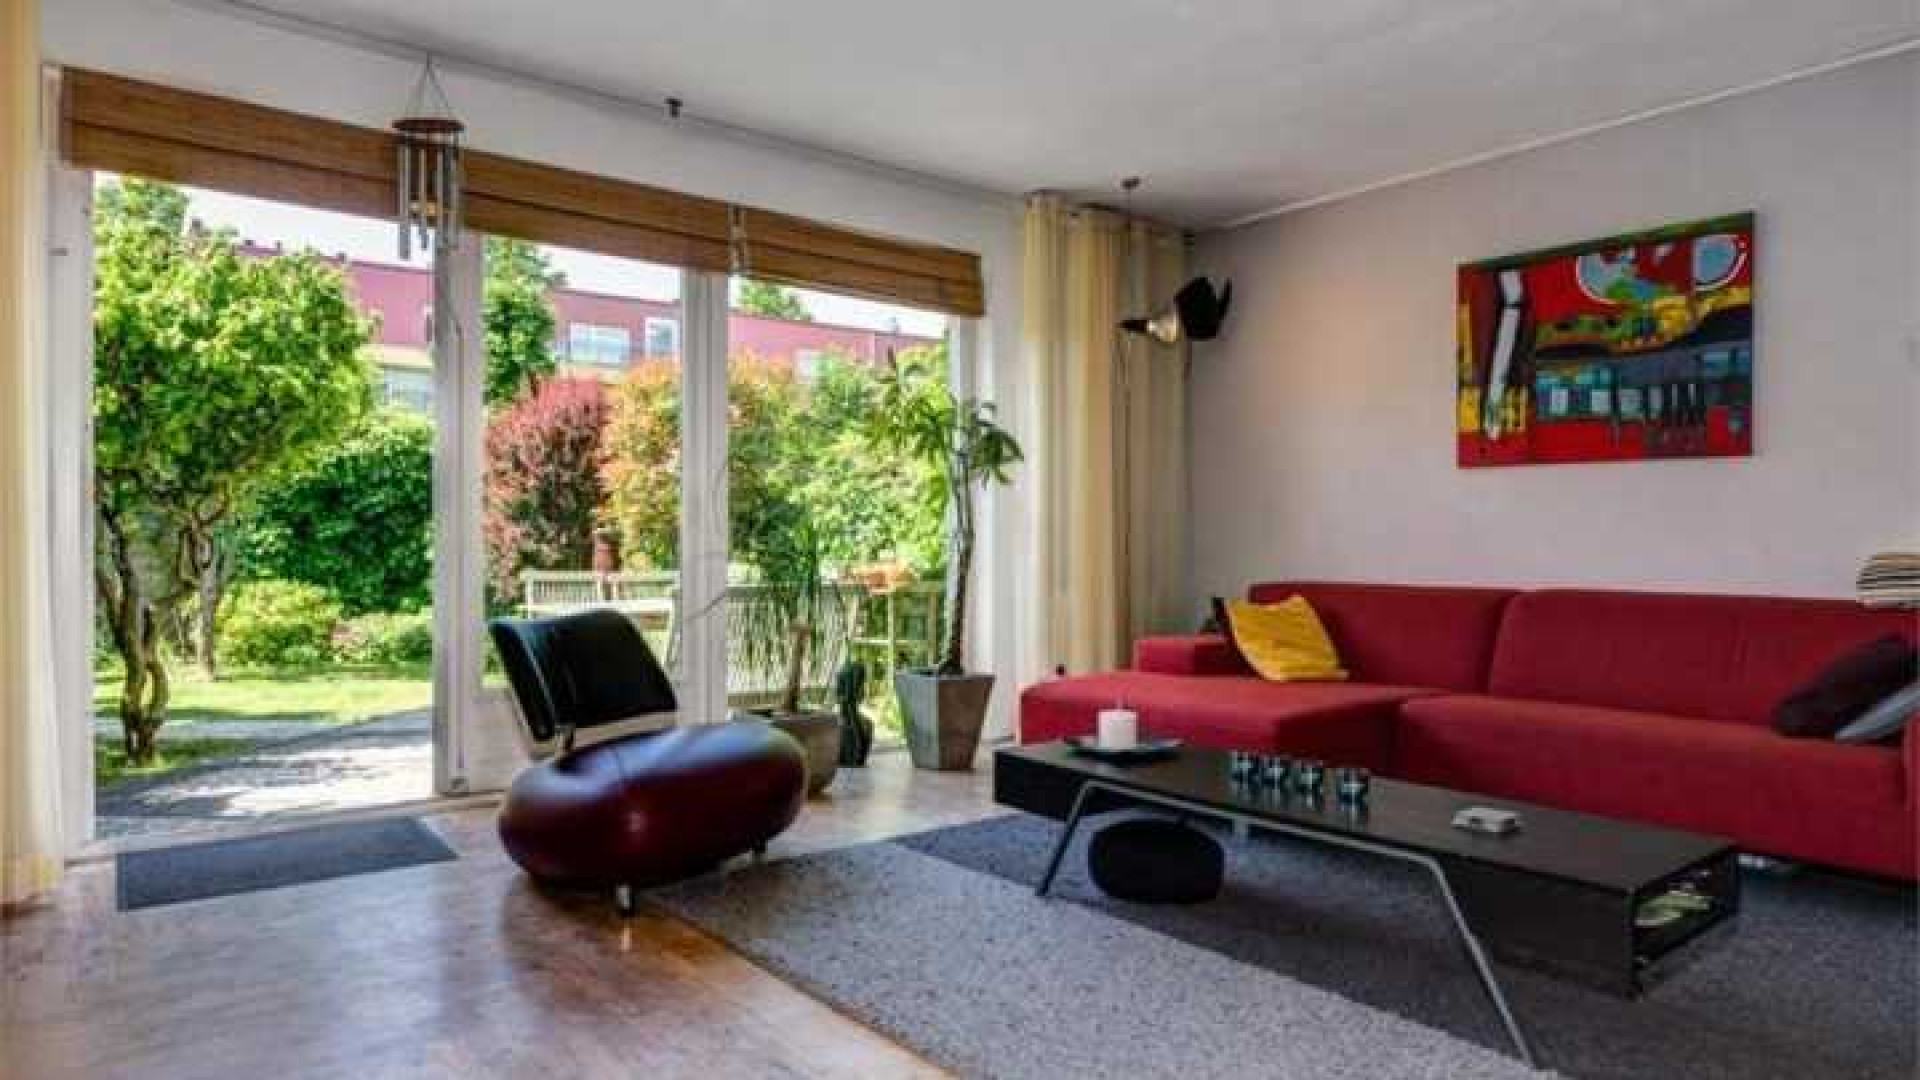 Robin van Persie koopt eengezinswoning in Rotterdam. Zie foto's 4